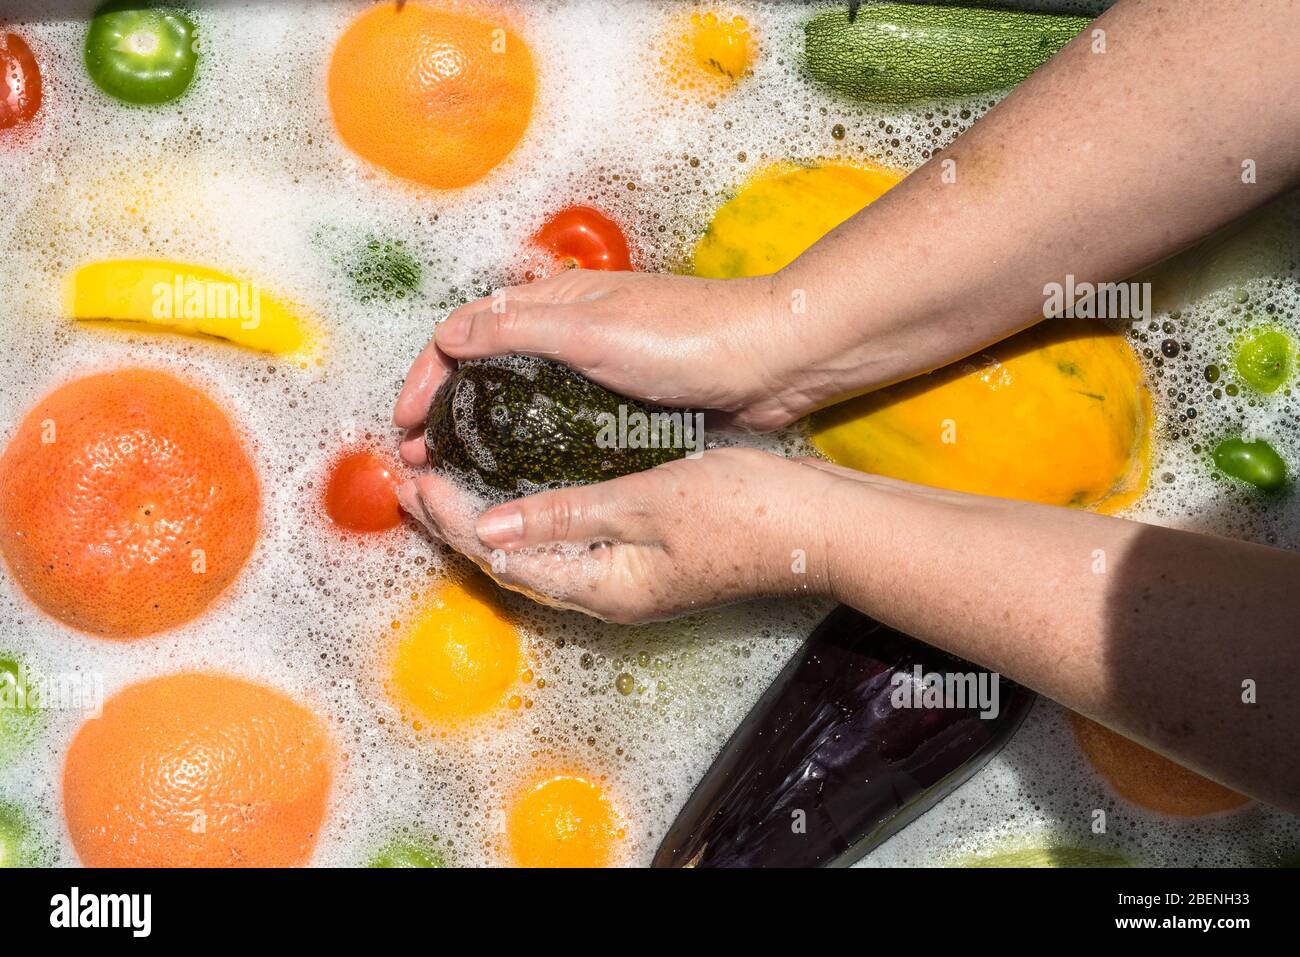 Waschen von Obst und Gemüse in Seifenwasser zur Desinfektion von  Coronavirus Stockfotografie - Alamy